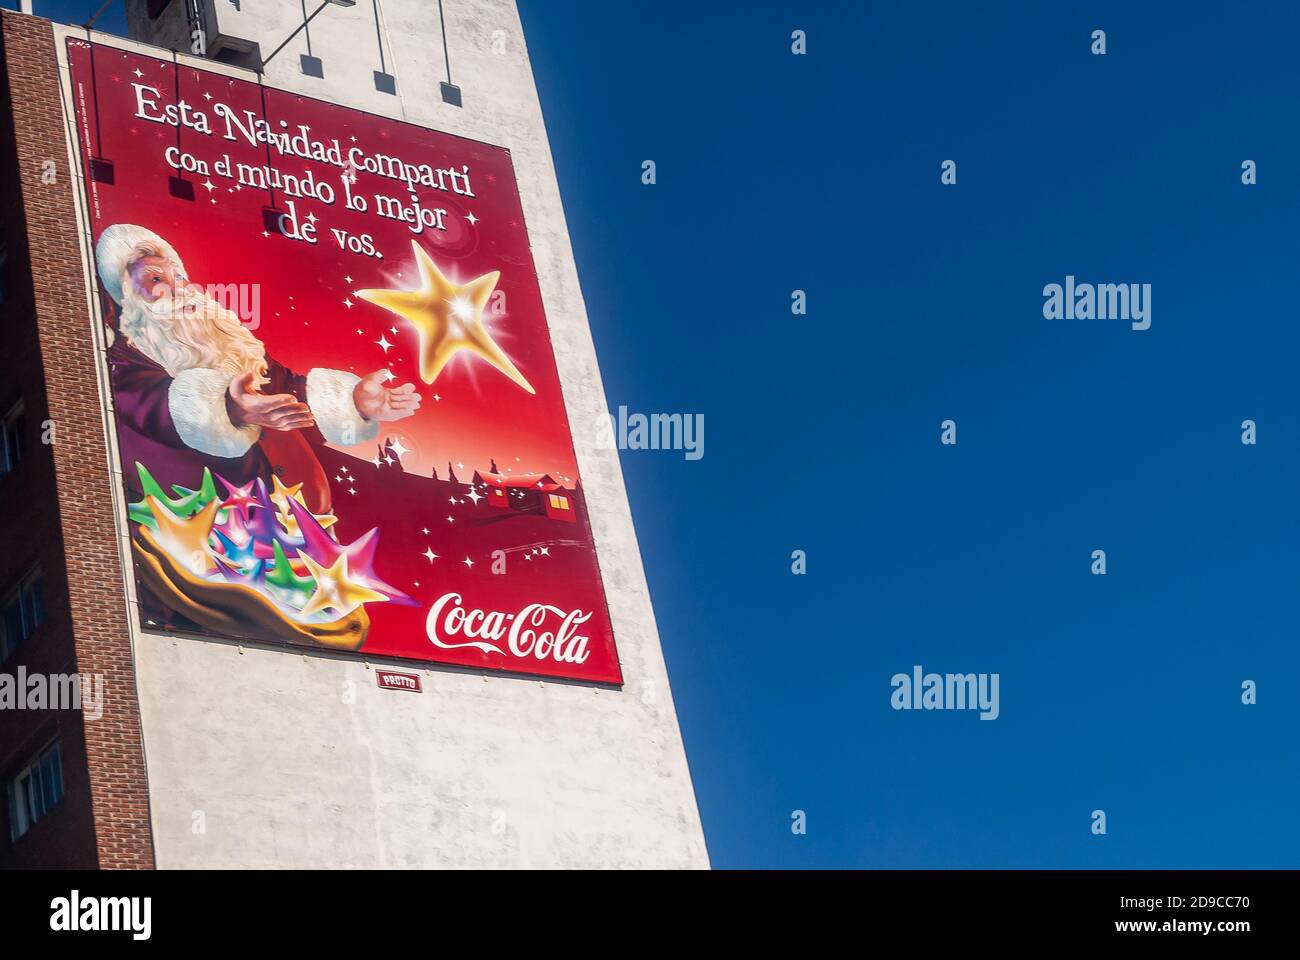 Montevideo, Uruguay- 18. Dezember 2008: Nahaufnahme des roten Coca-Cola weihnachtsbanners an der weißen Wand und flankiert von tiefblauem Himmel. Weihnachtsmann und gol Stockfoto